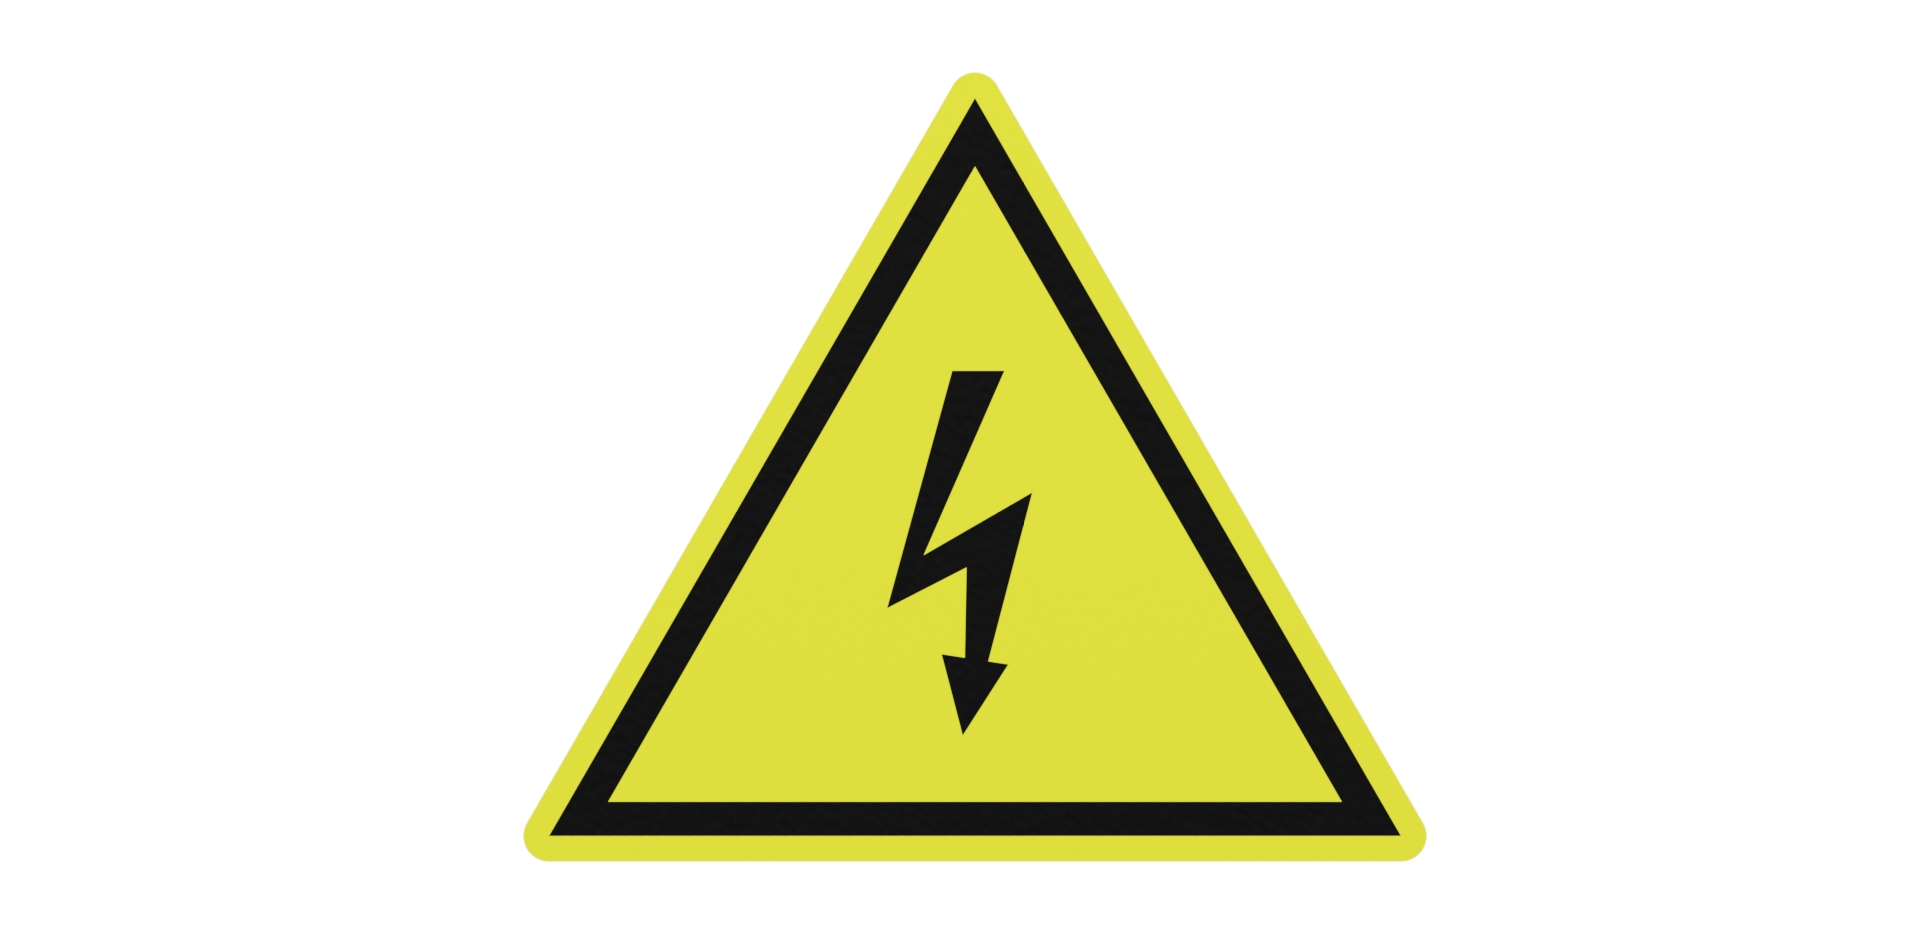 Electricity Dangers Symbols - ClipArt Best